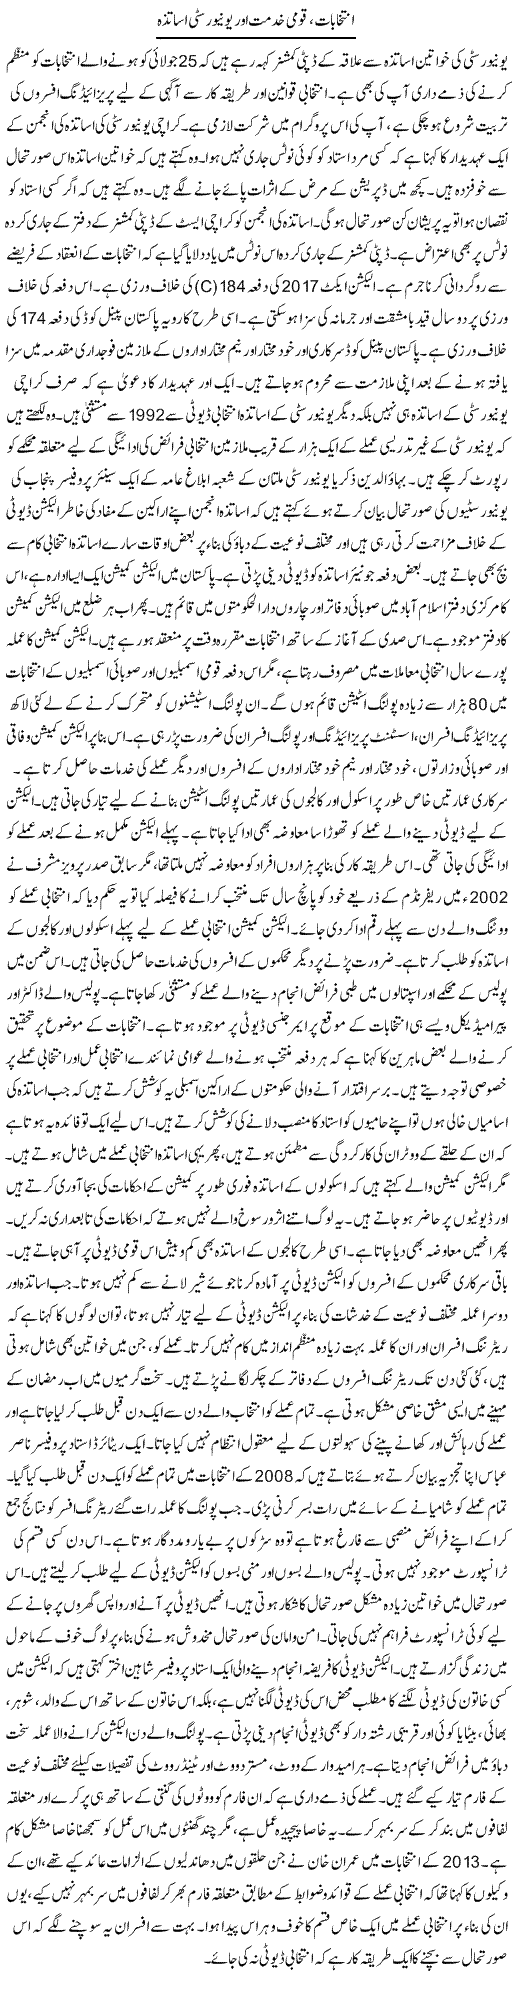 Intikhabat, Qaumi Khidmat Aur University Usatza | Tausif Ahmad Khan | Daily Urdu Columns